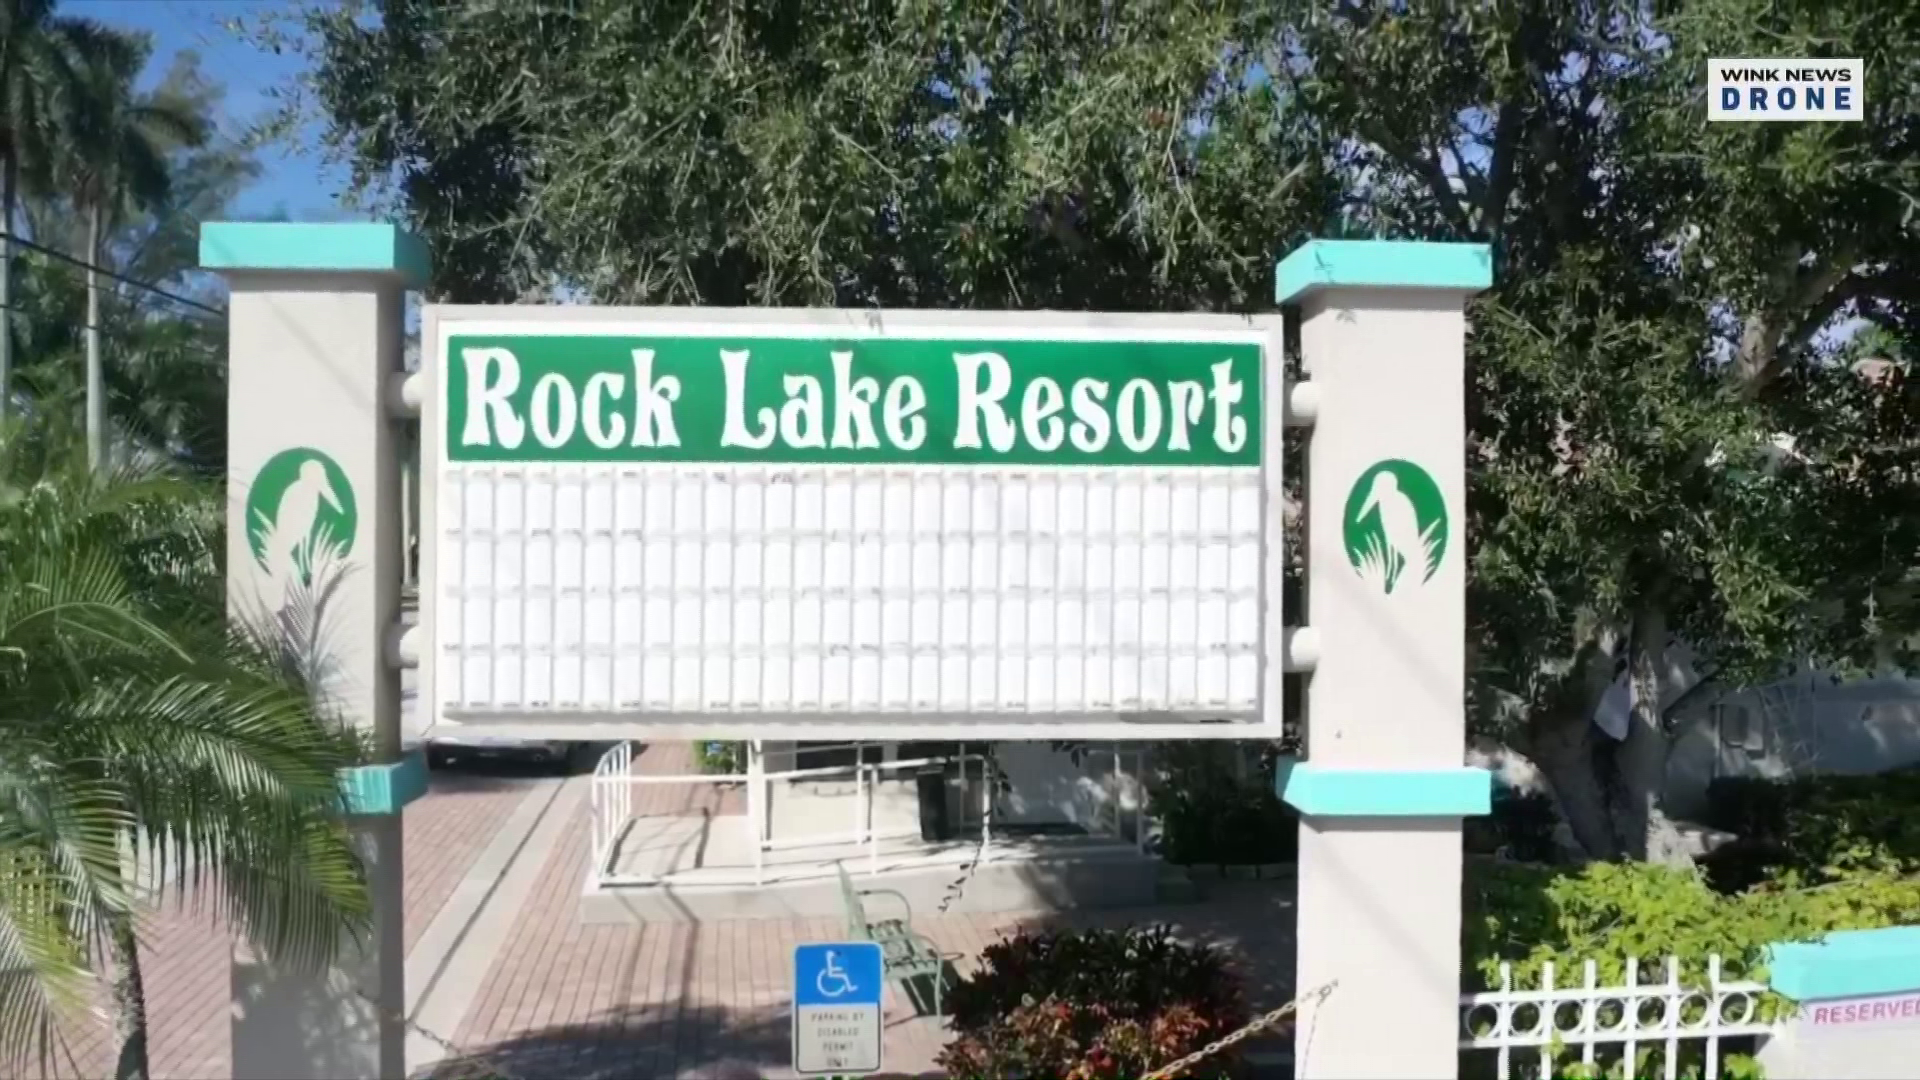 Rock Lake Resort